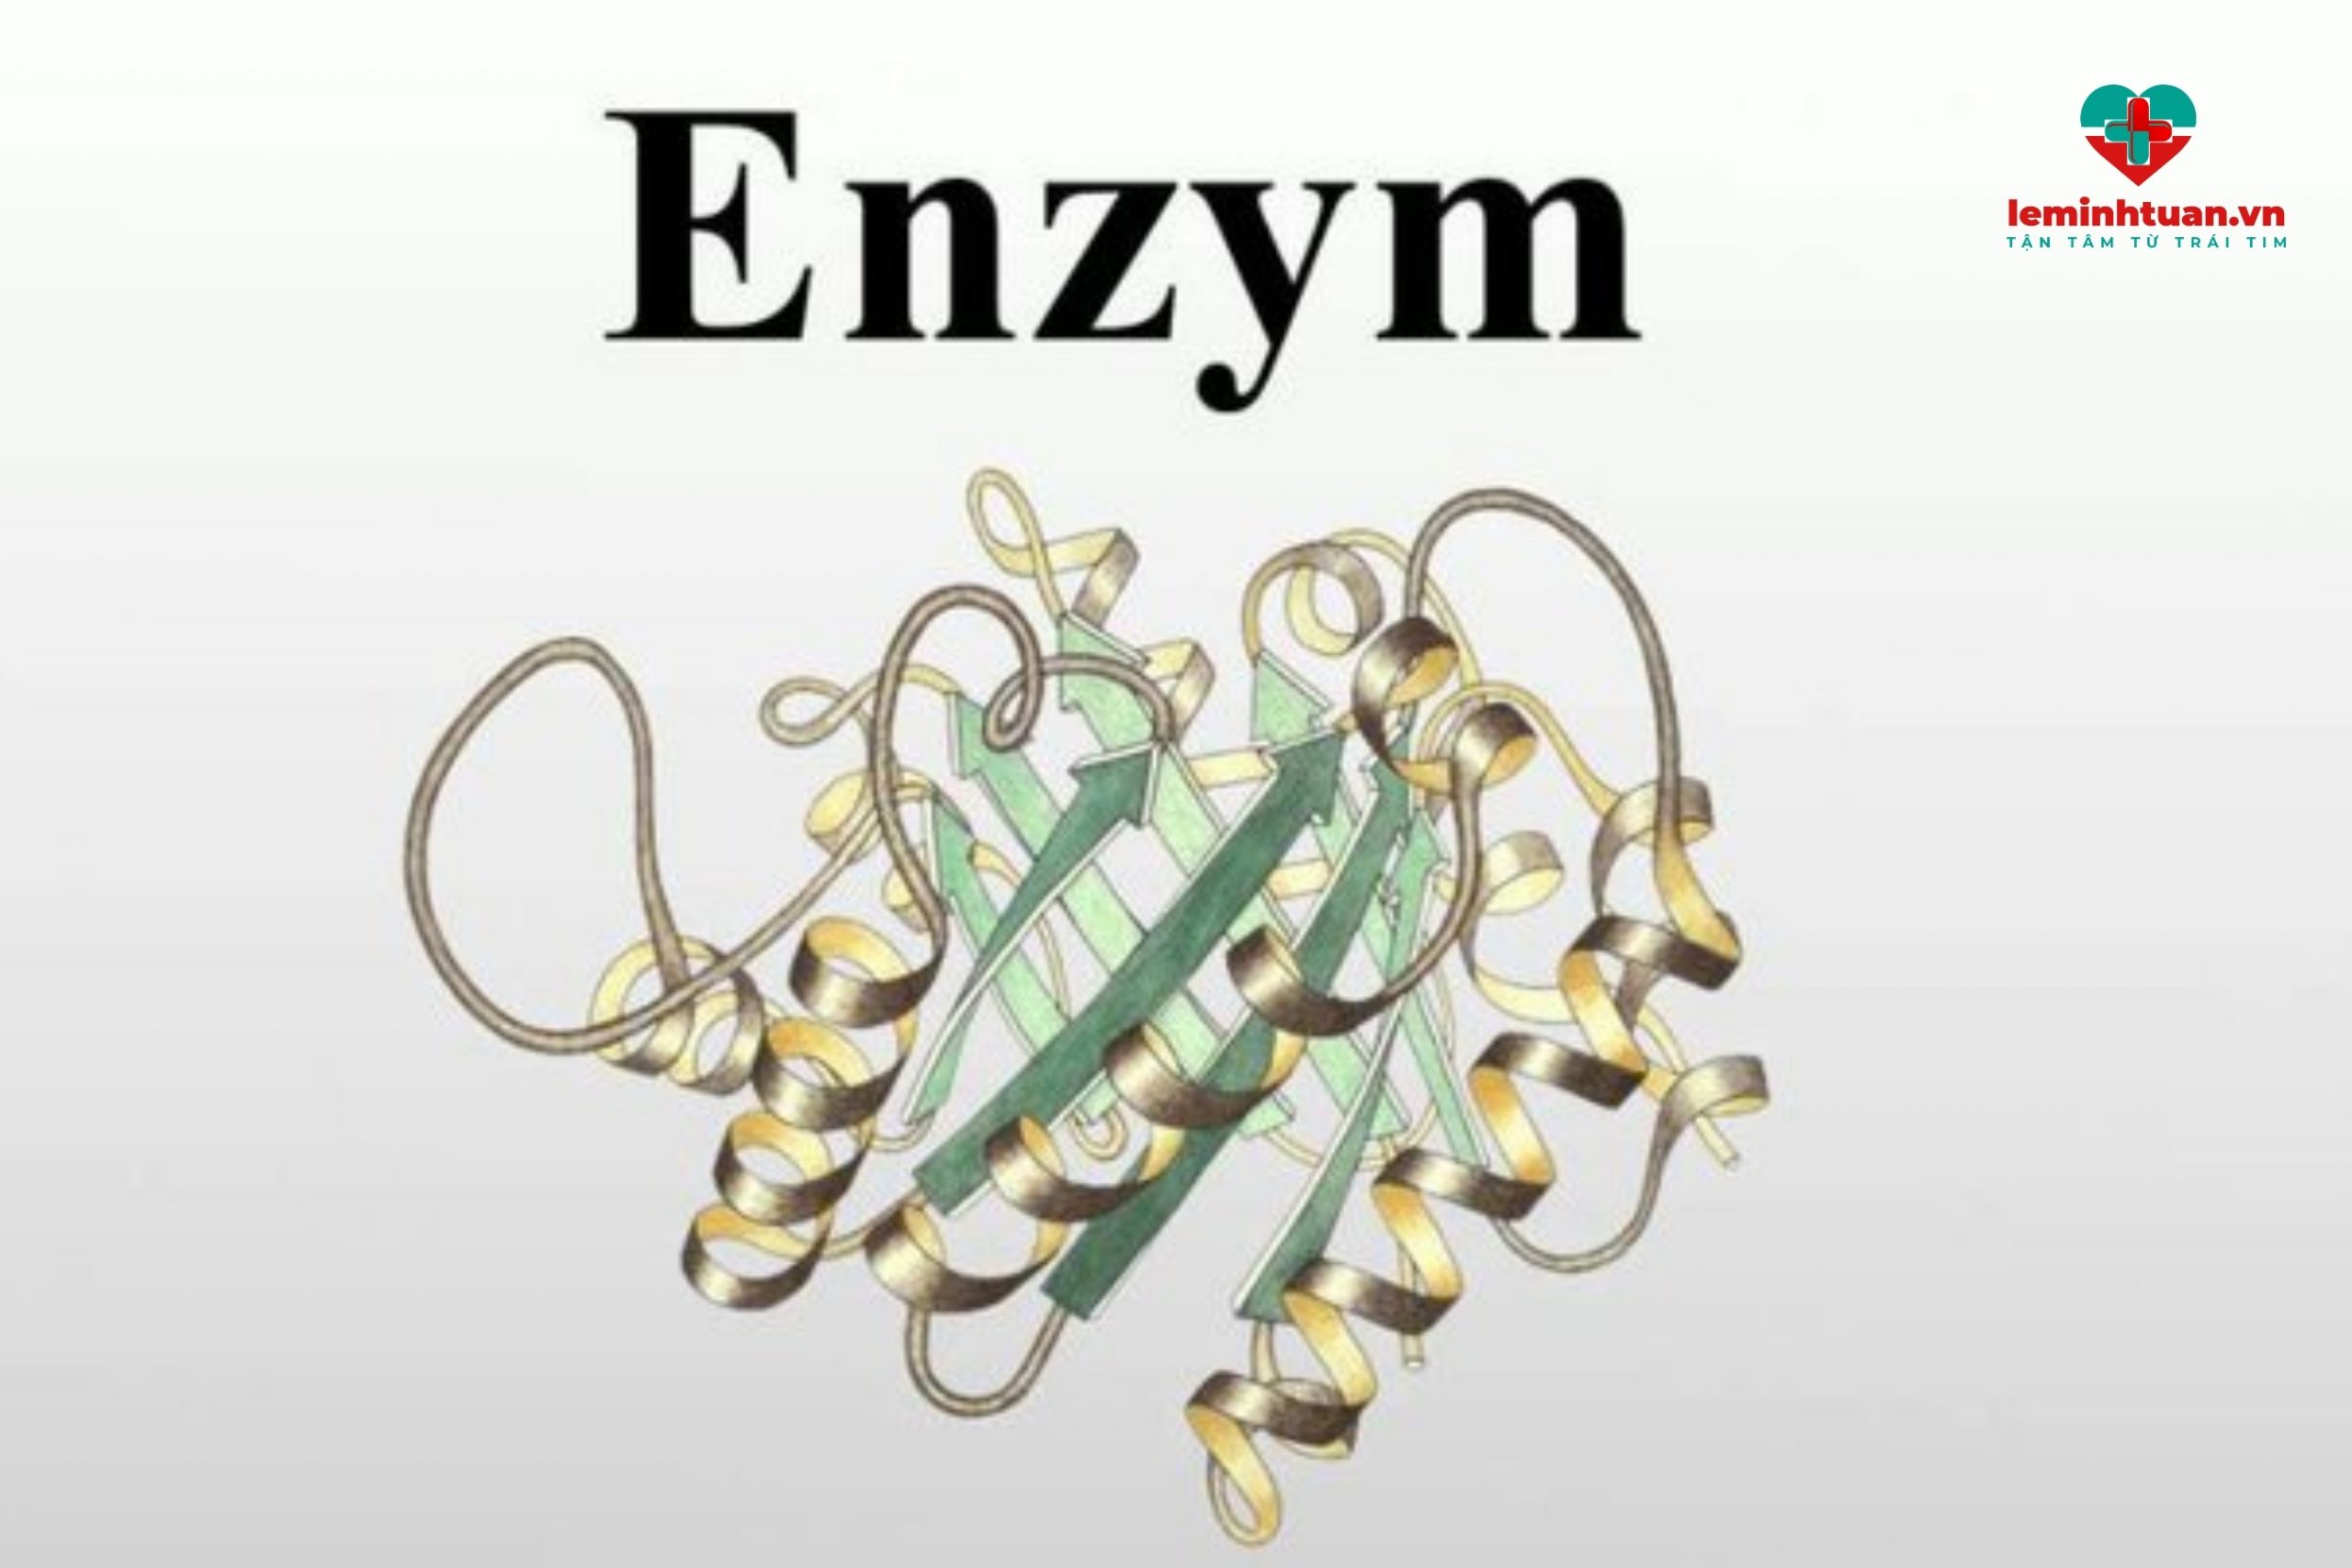 Enzym tiêu hóa là gì?